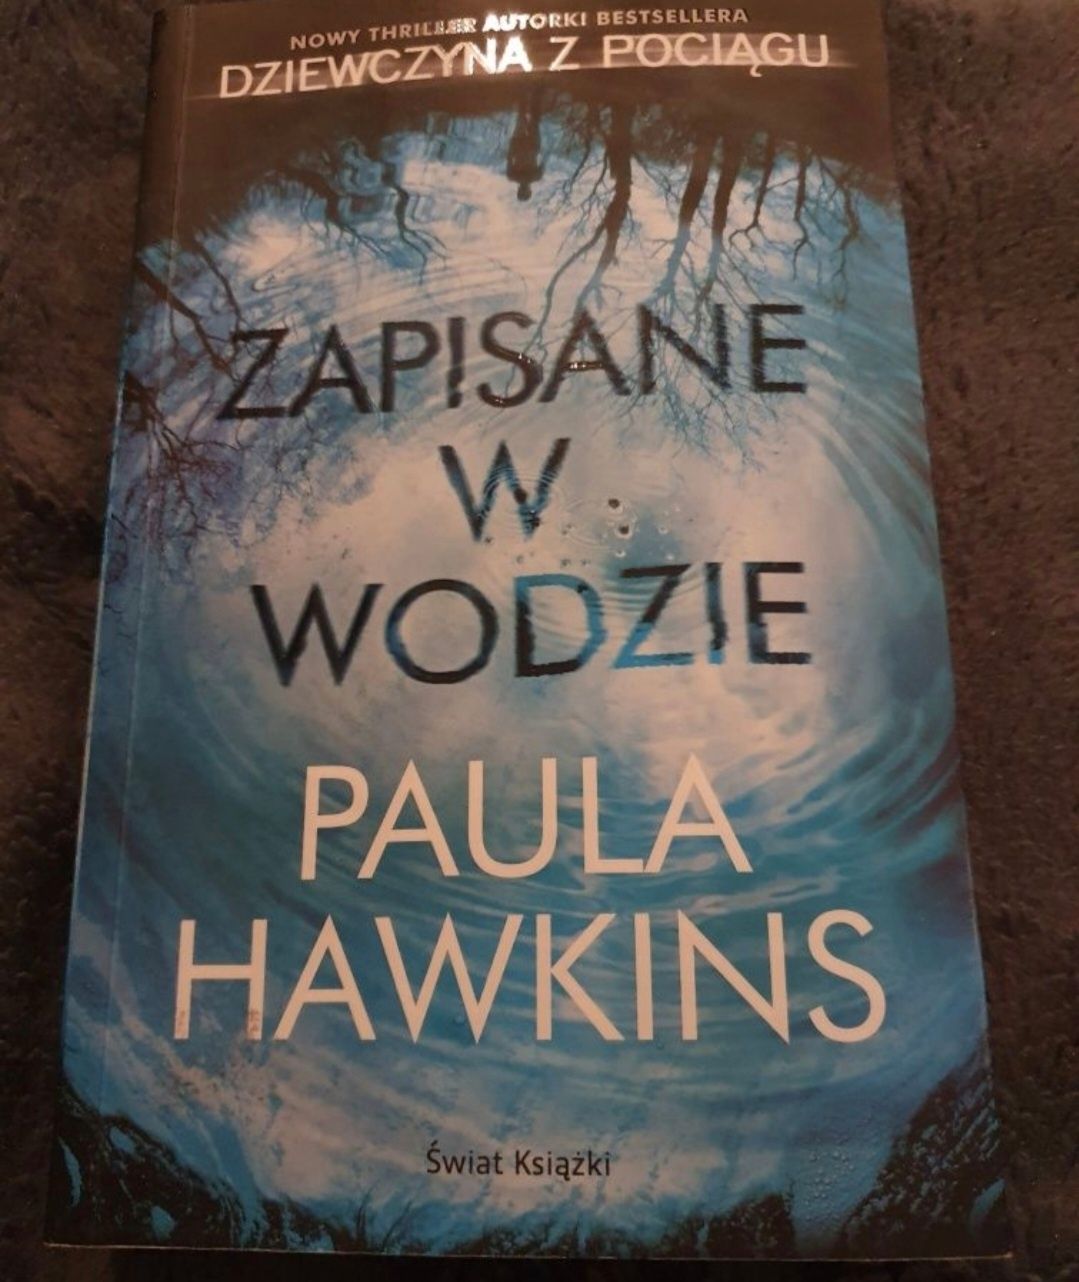 Książka "zapisane w wodzie" Paula Hawkins